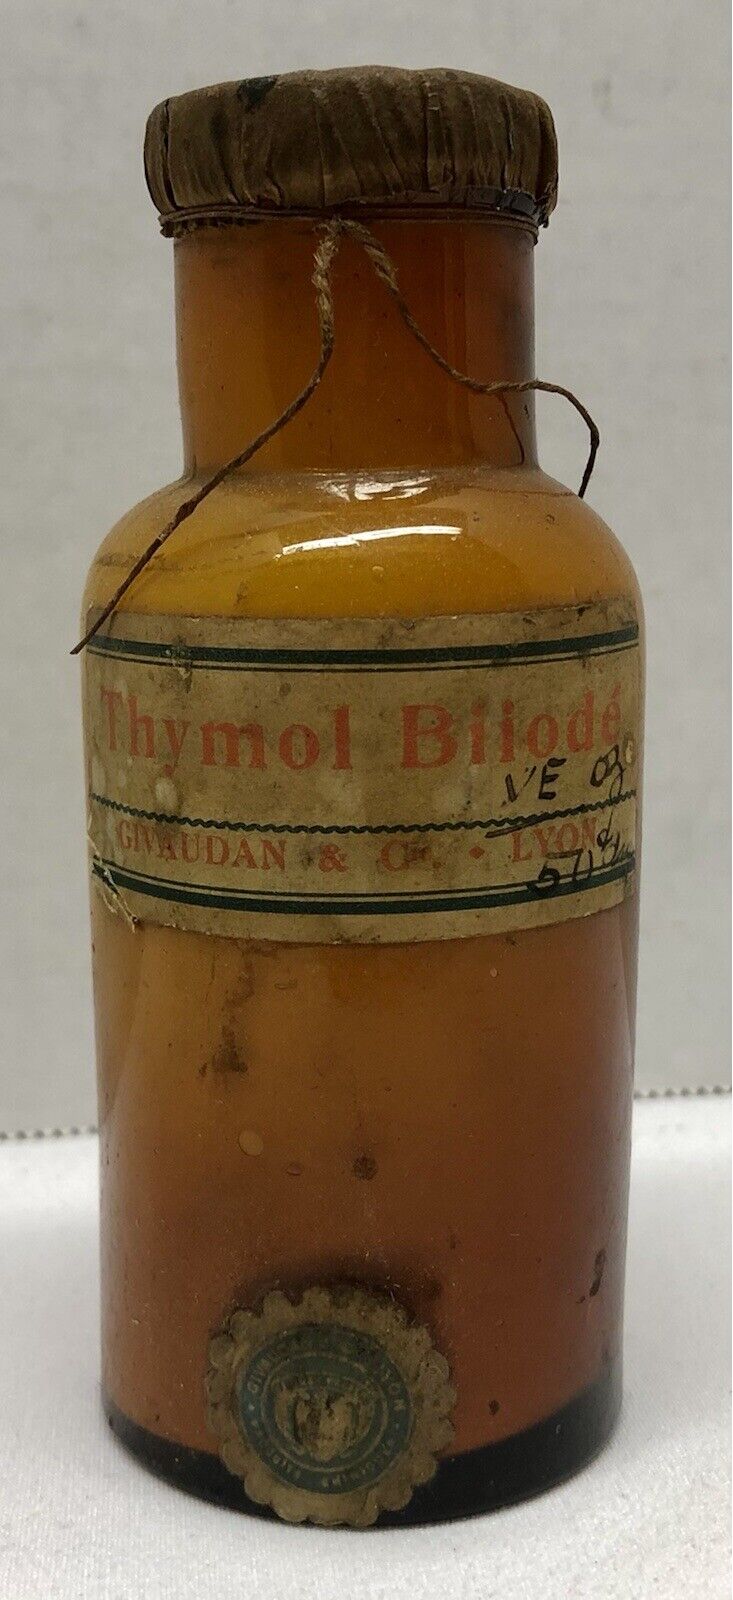 Rare Vintage Amber Glass Medicine Bottle Thymol Biiode Givaudan Pharmacy Sealed